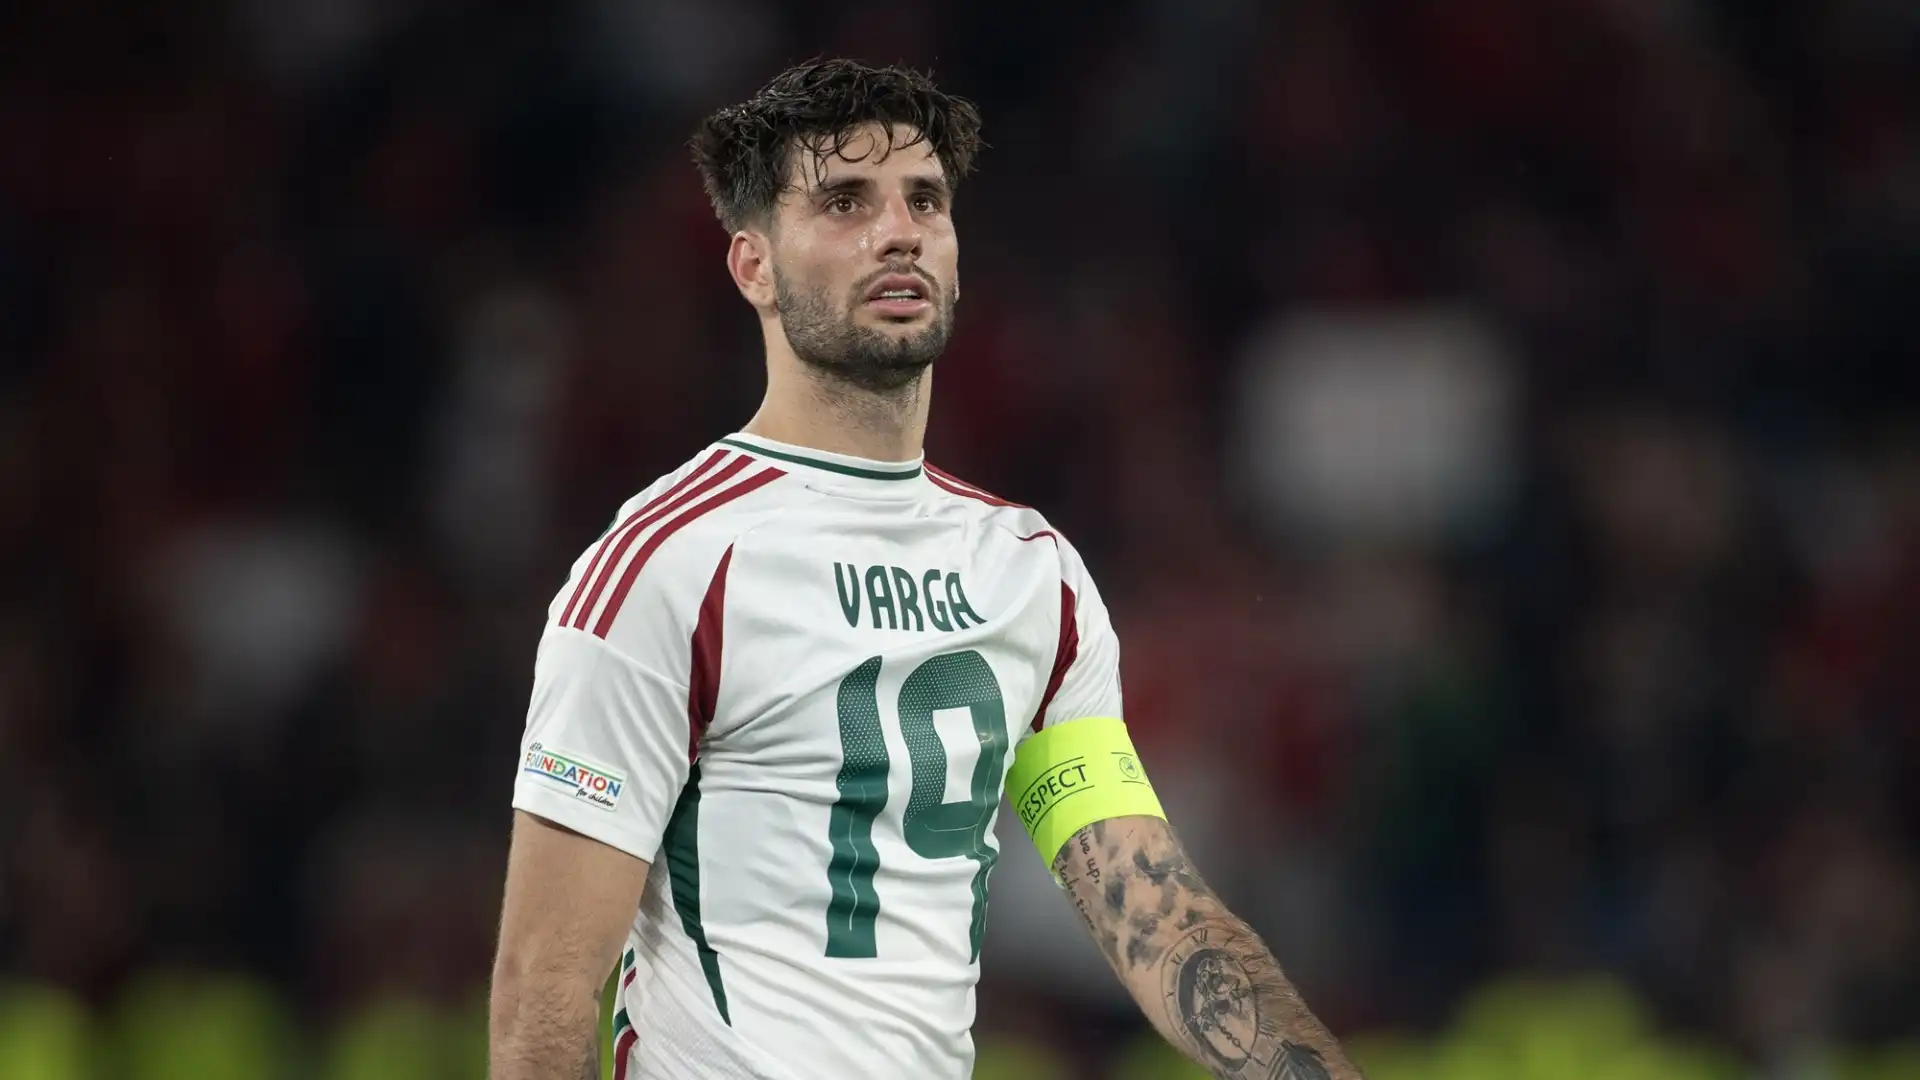 L'Ungheria a fine partita gli ha dedicato la vittoria. Il giocatore è in ospedale in condizioni definite "stabili"